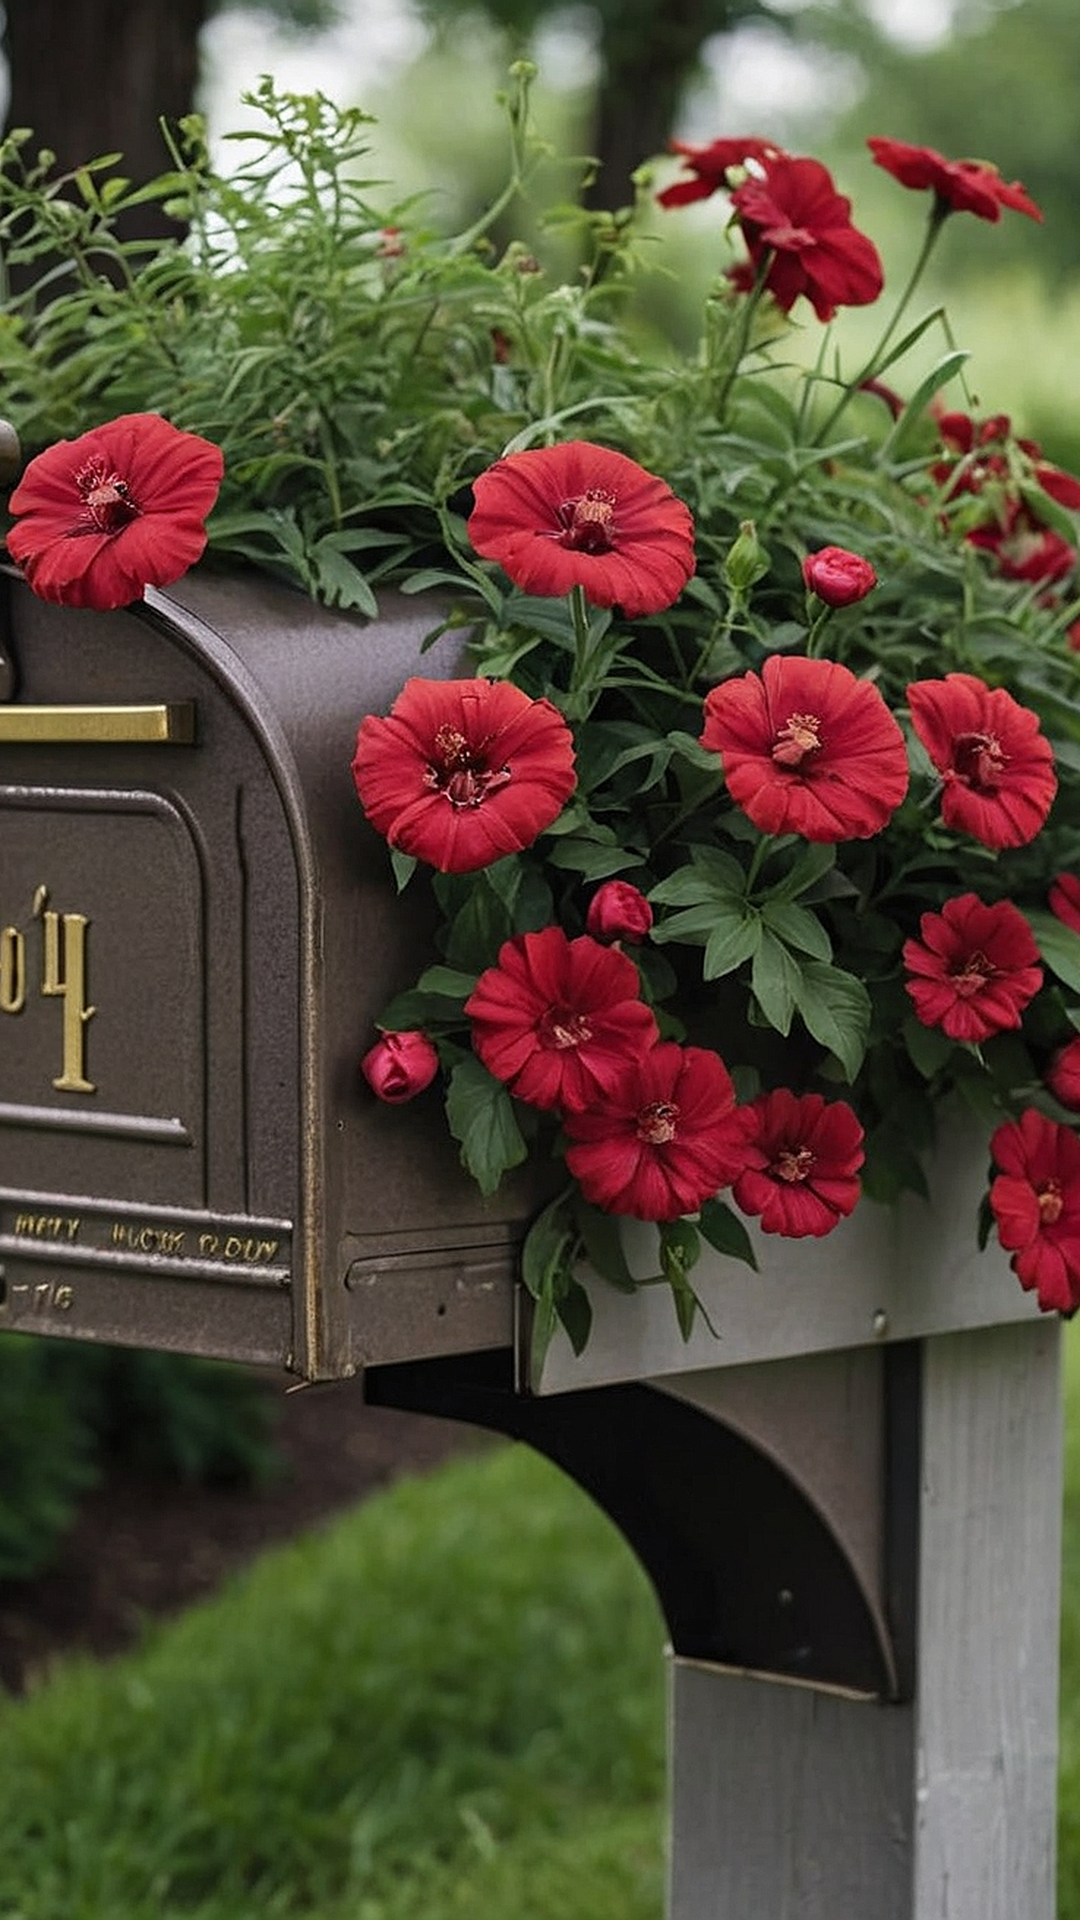 Garden Glory: Mailbox Flower Bed Inspirations